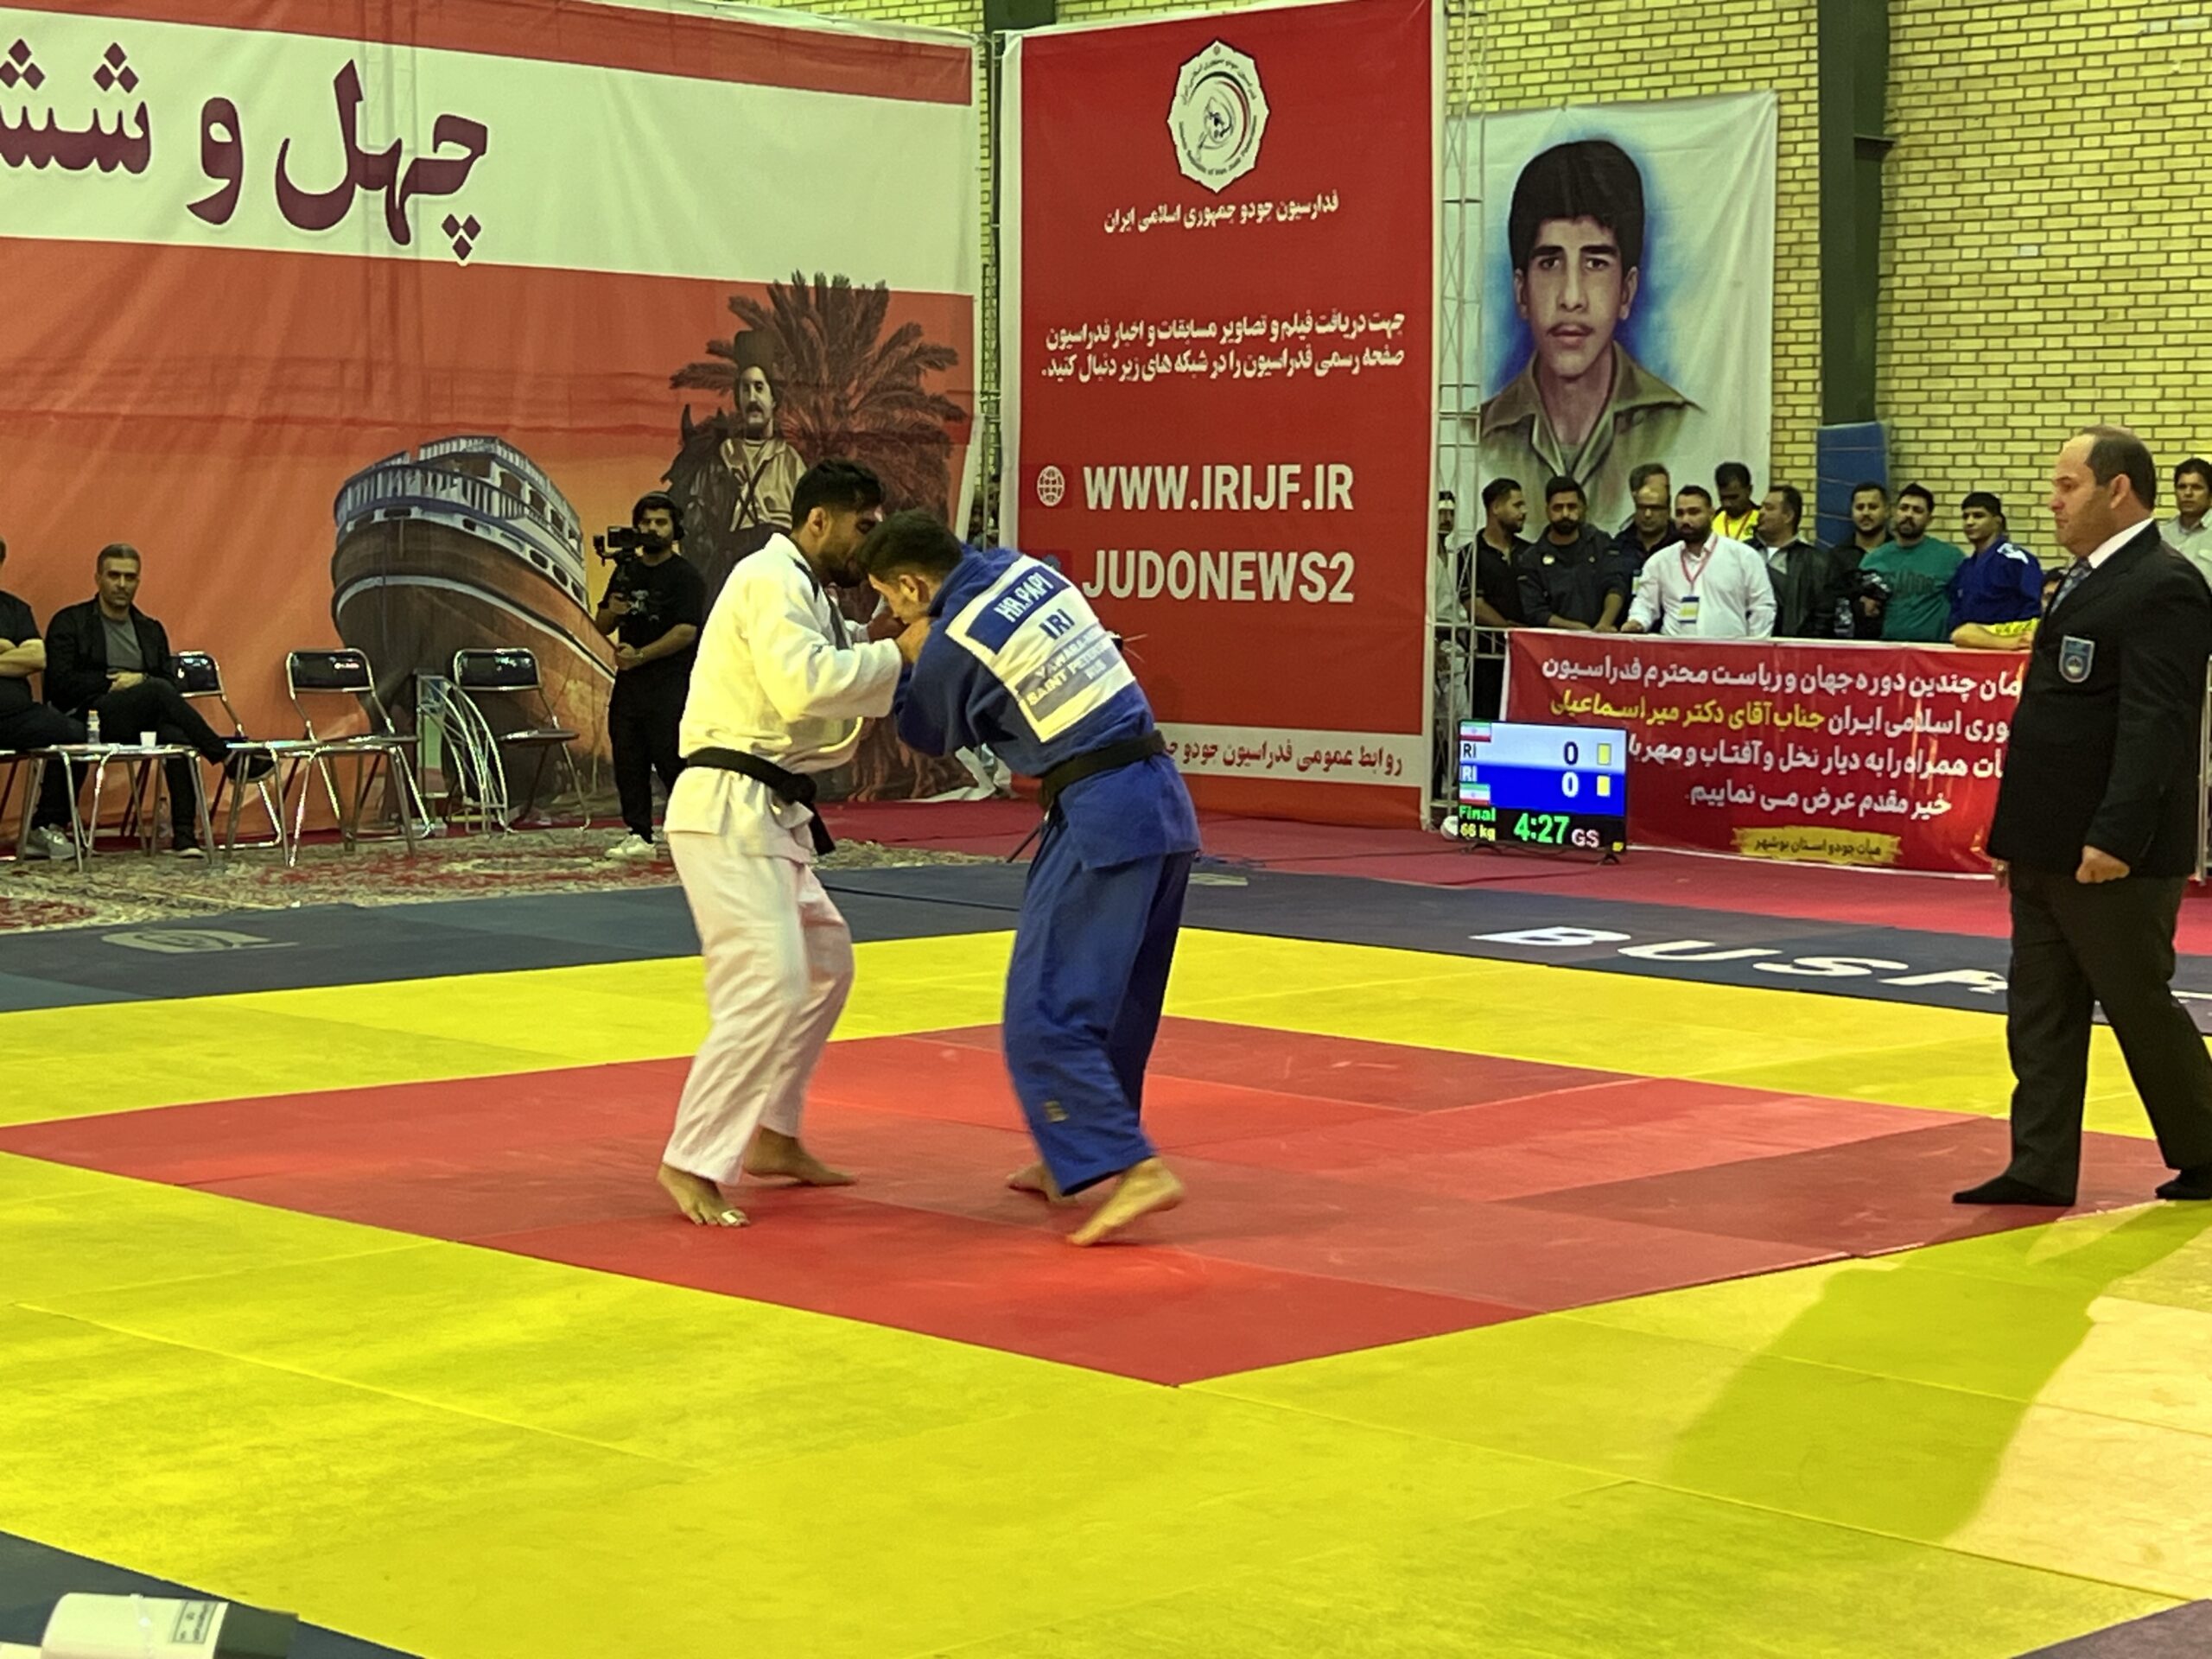 جودوکاران البرزی جام قهرمانی را بالا سر بردند/ لرستان نایب قهرمان شد و تهران در جایگاه سوم قرار گرفت